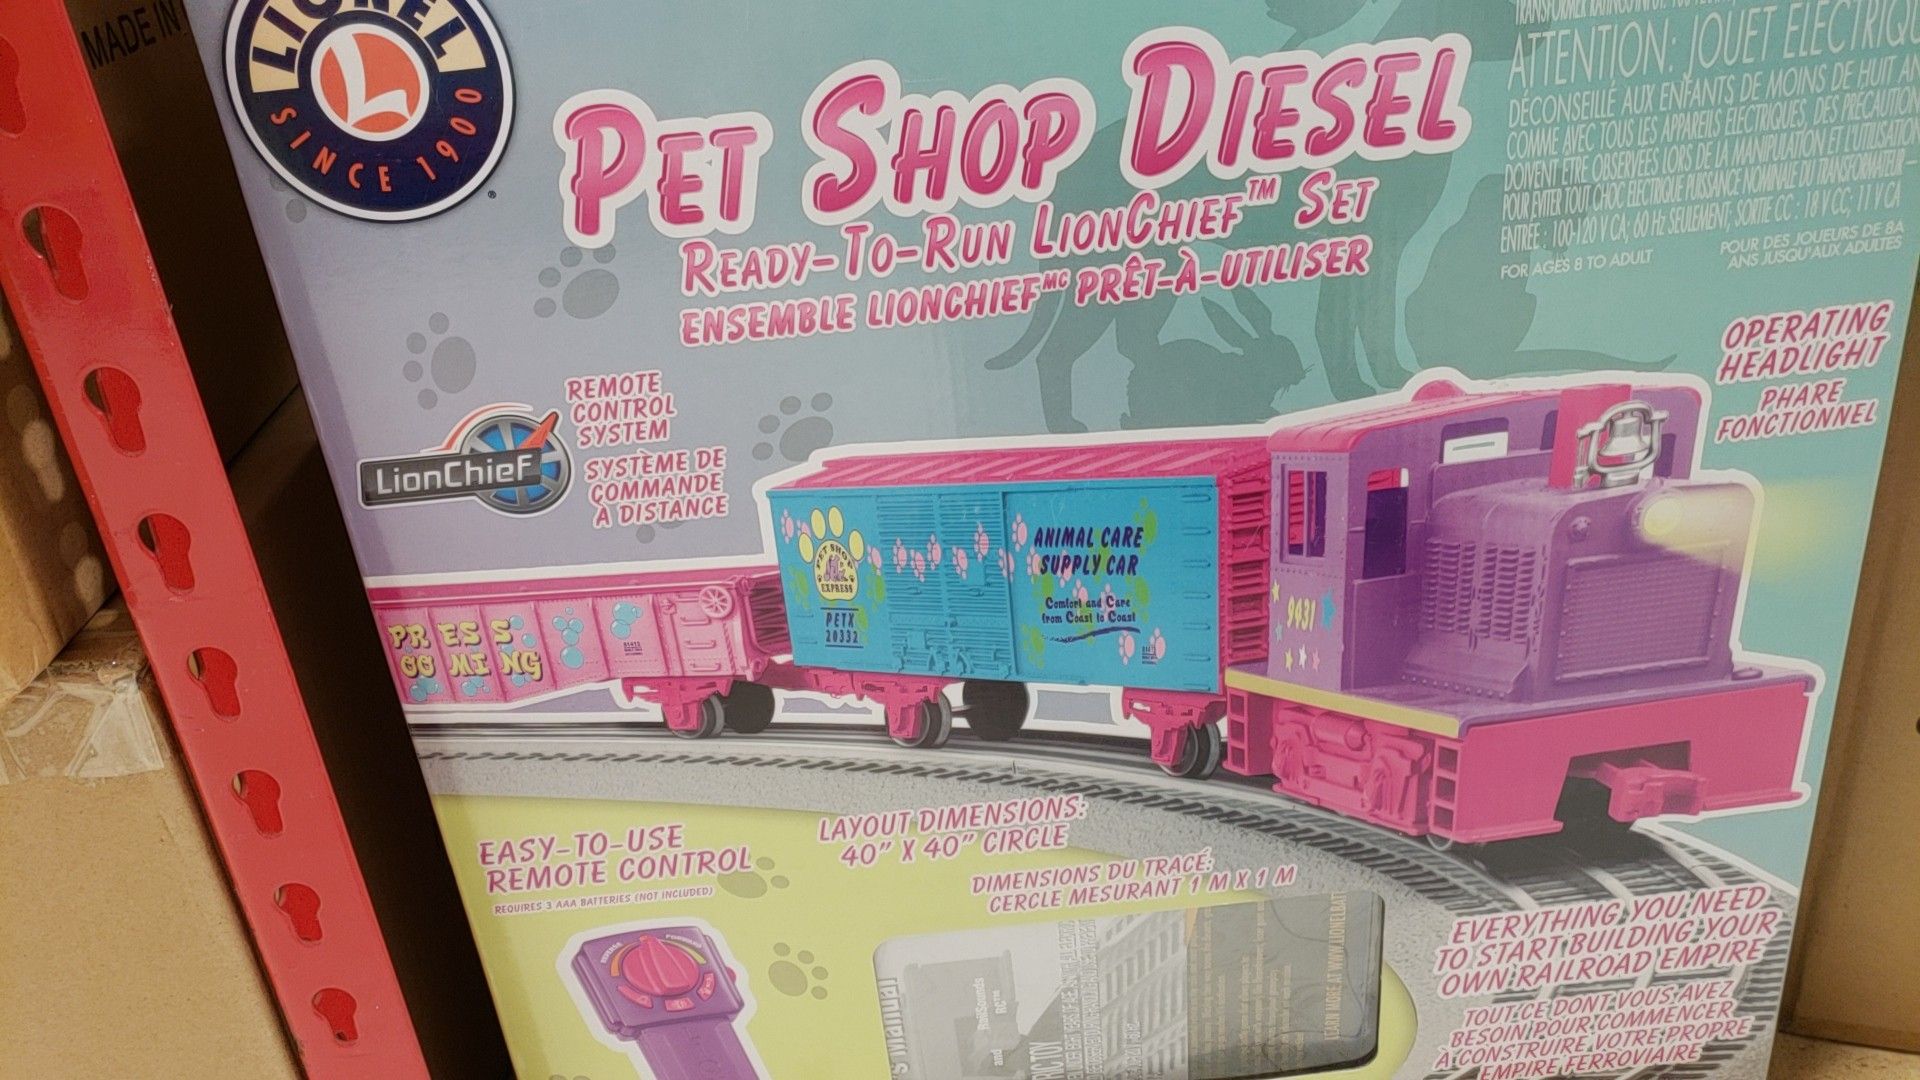 Pet shop diesel remote train set